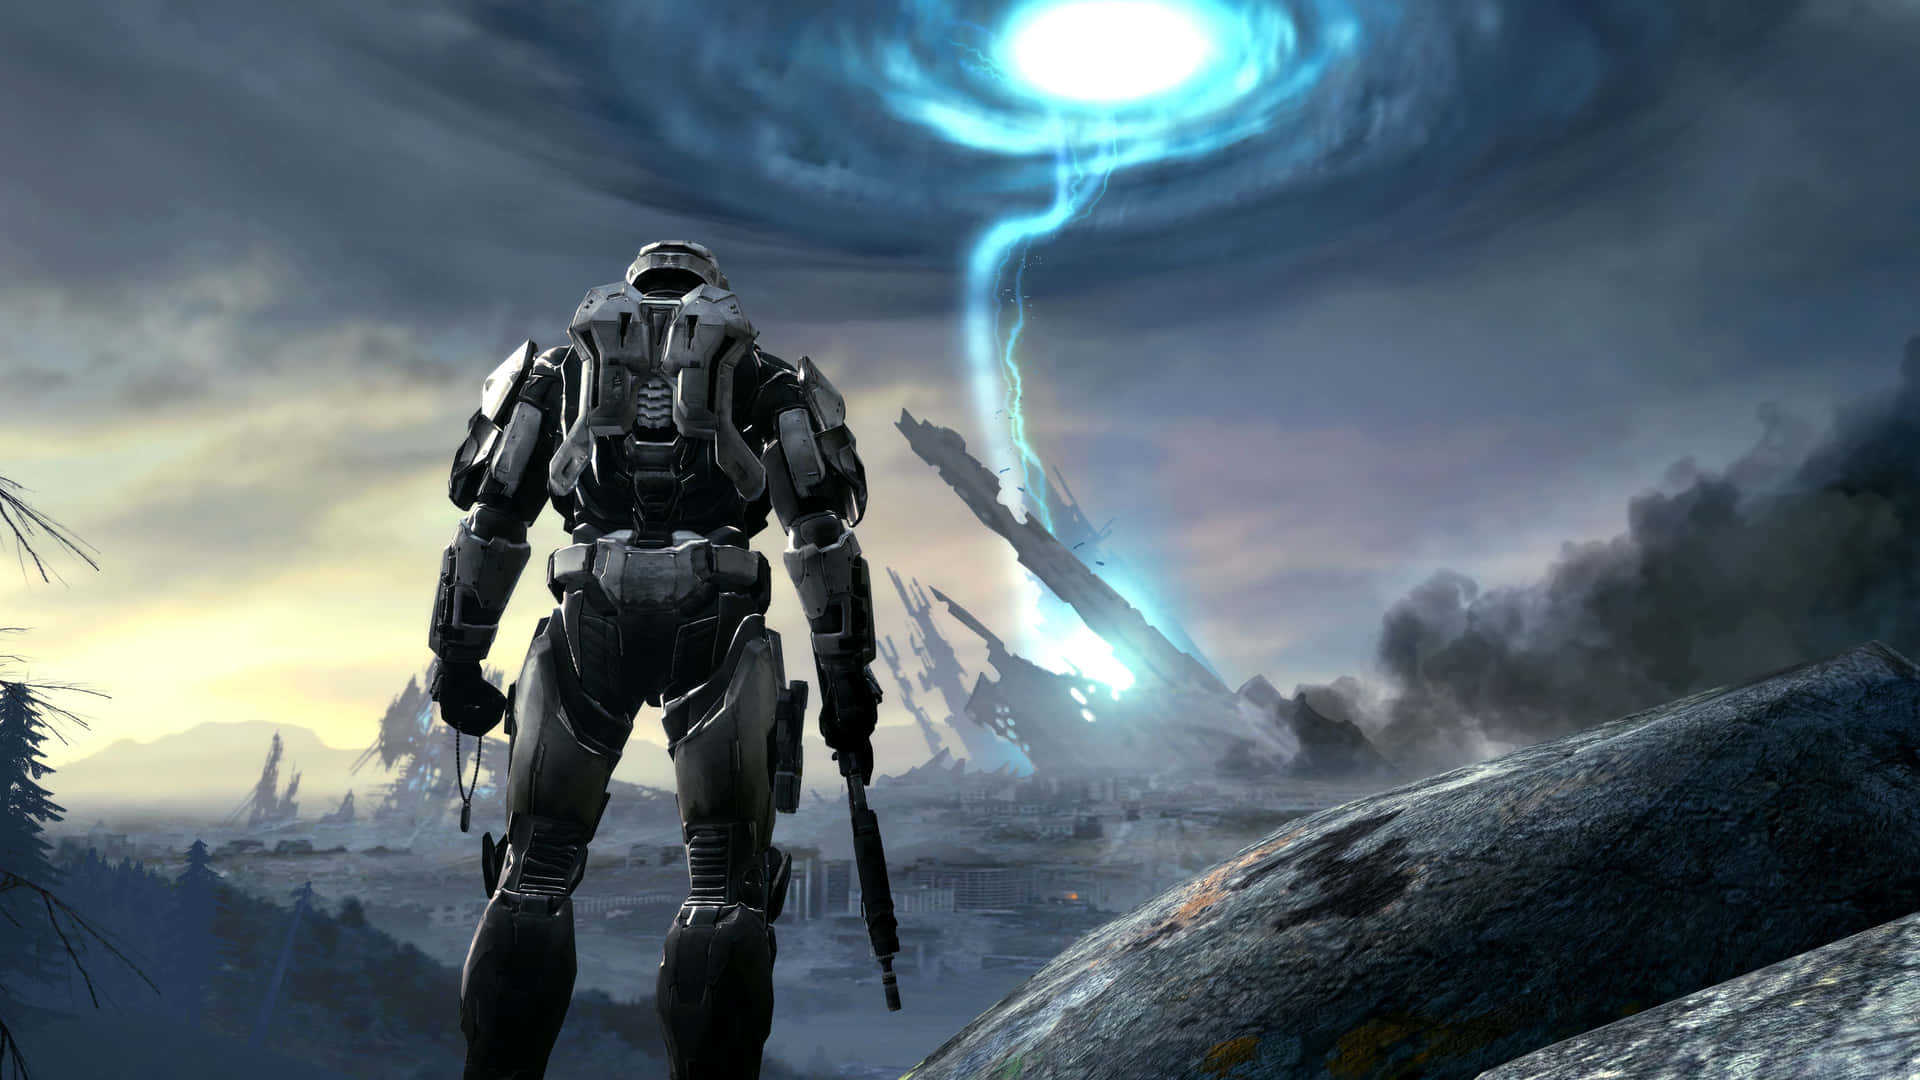 Sjov Halo-soldat med et tordenvejr højt oppe. Wallpaper